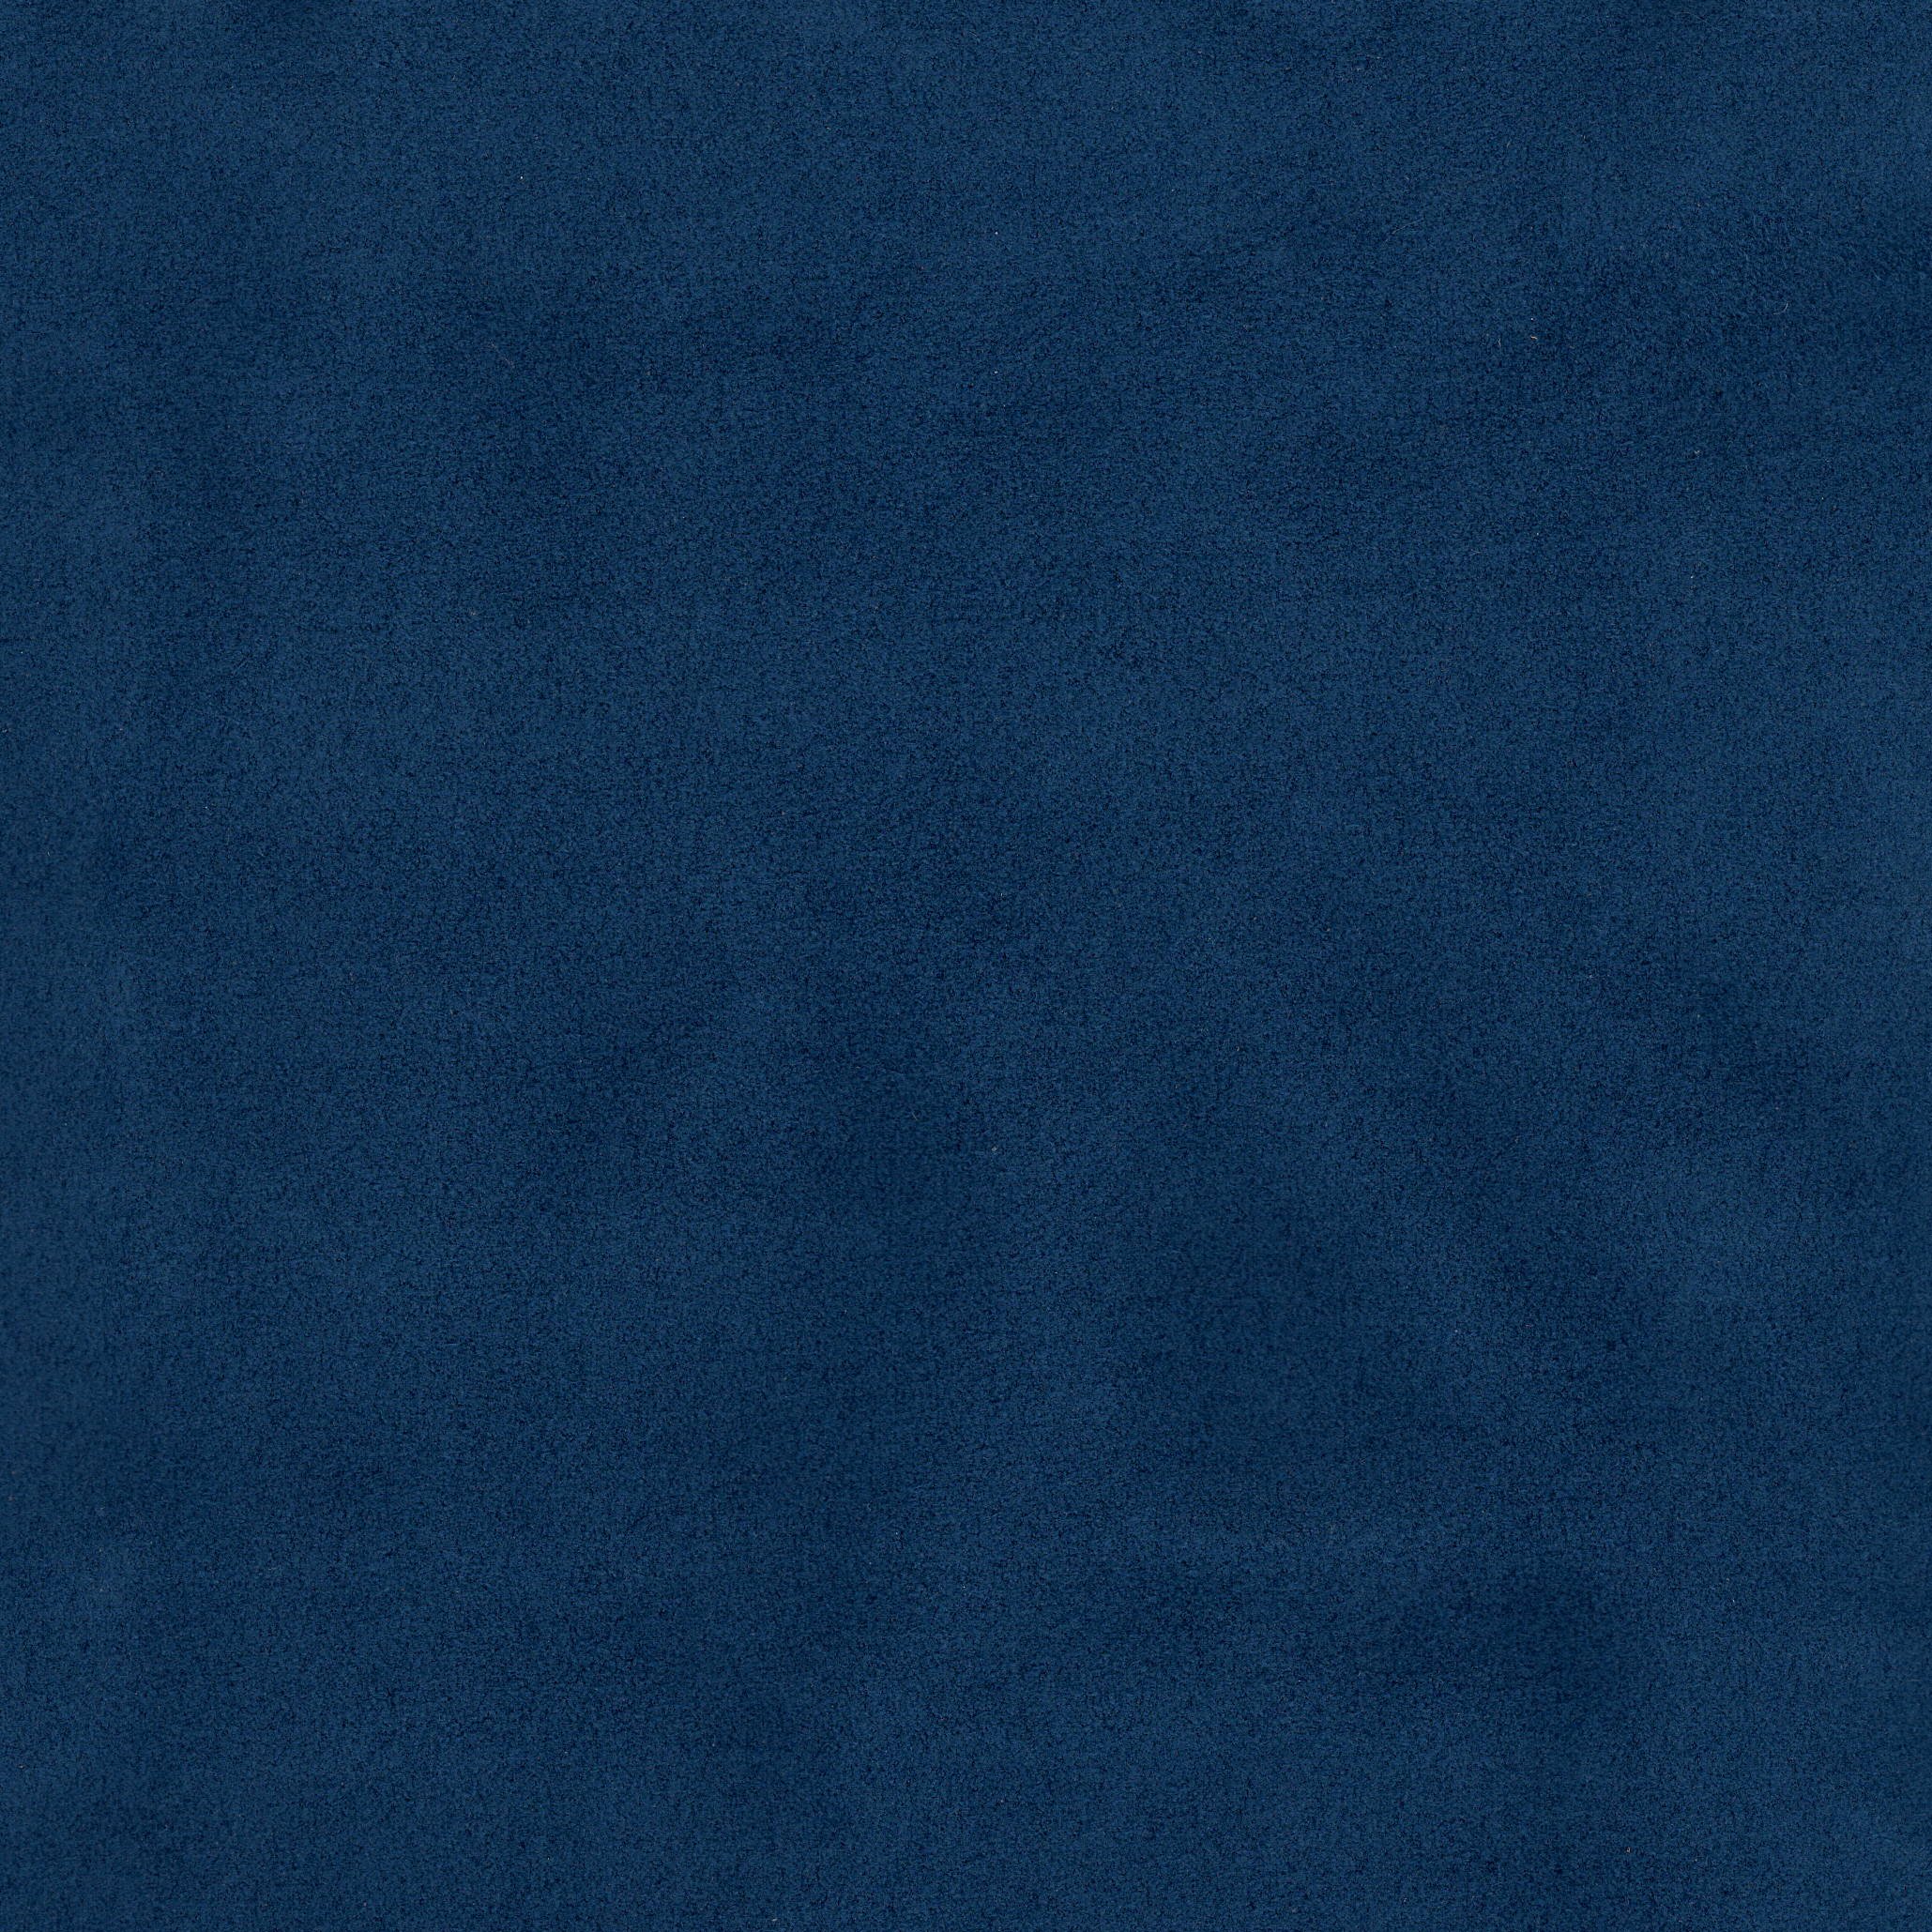 Ultrasuede - 2877 Cobalt Blue